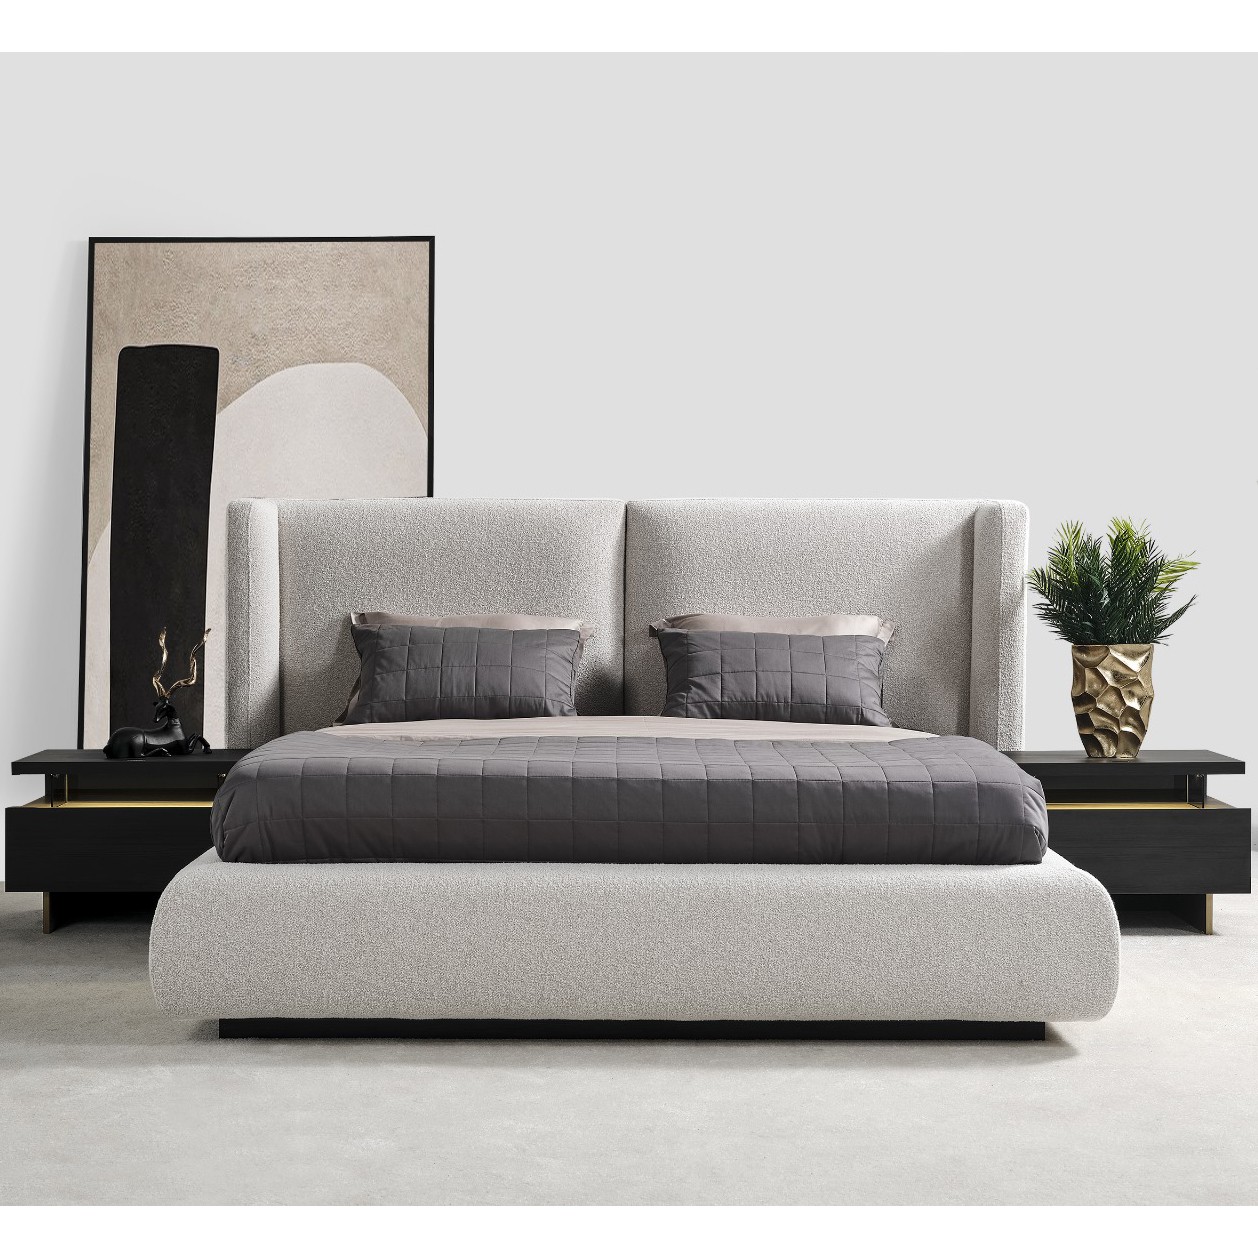 Eva Bed With Storage 160x200 cm